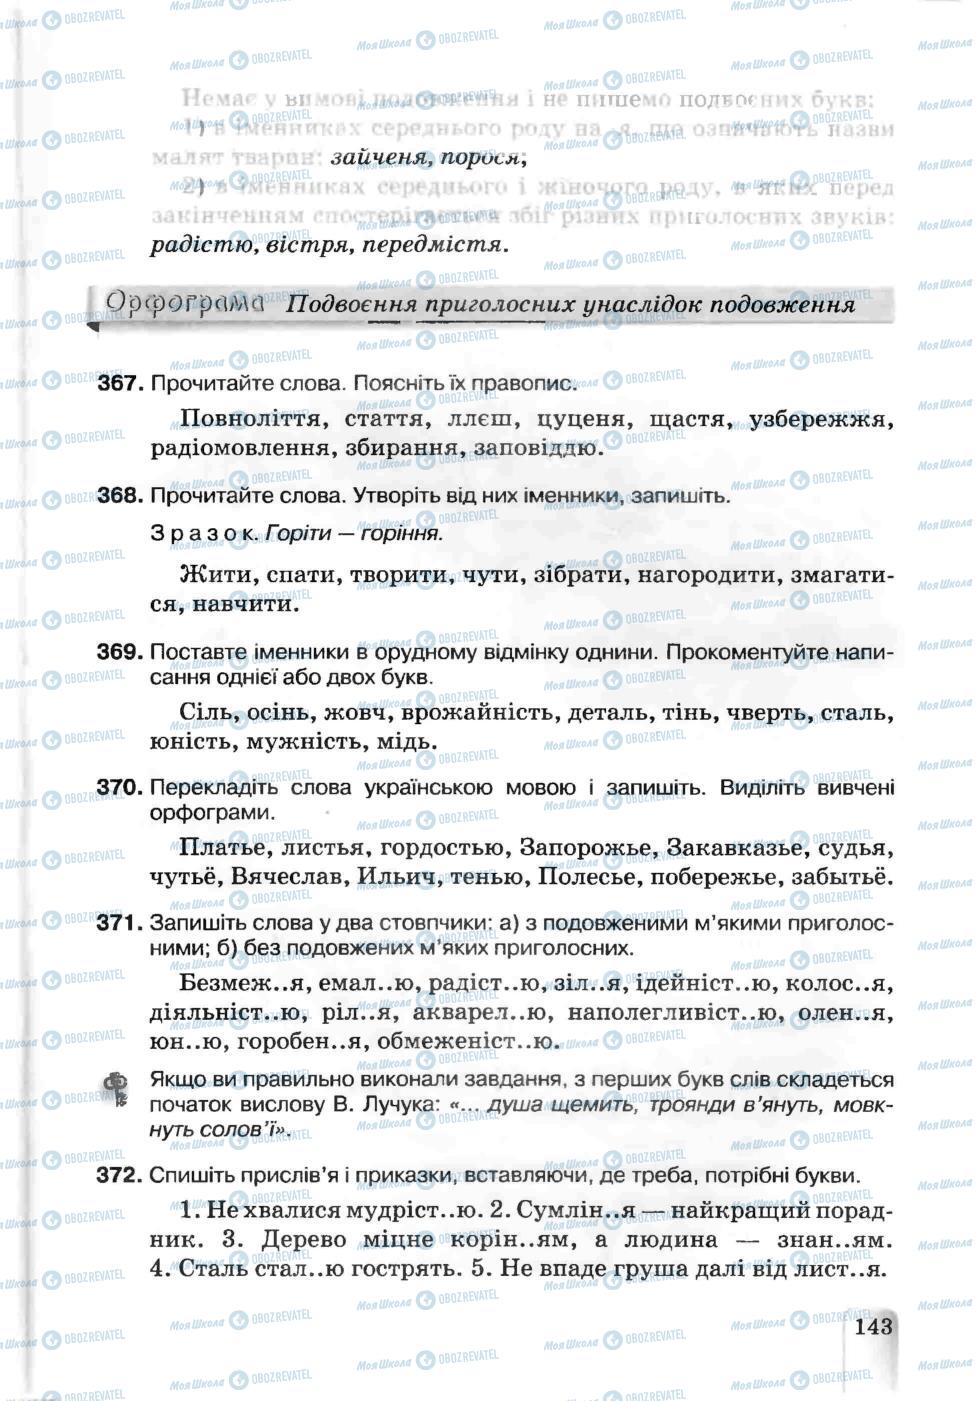 Підручники Українська мова 5 клас сторінка 143